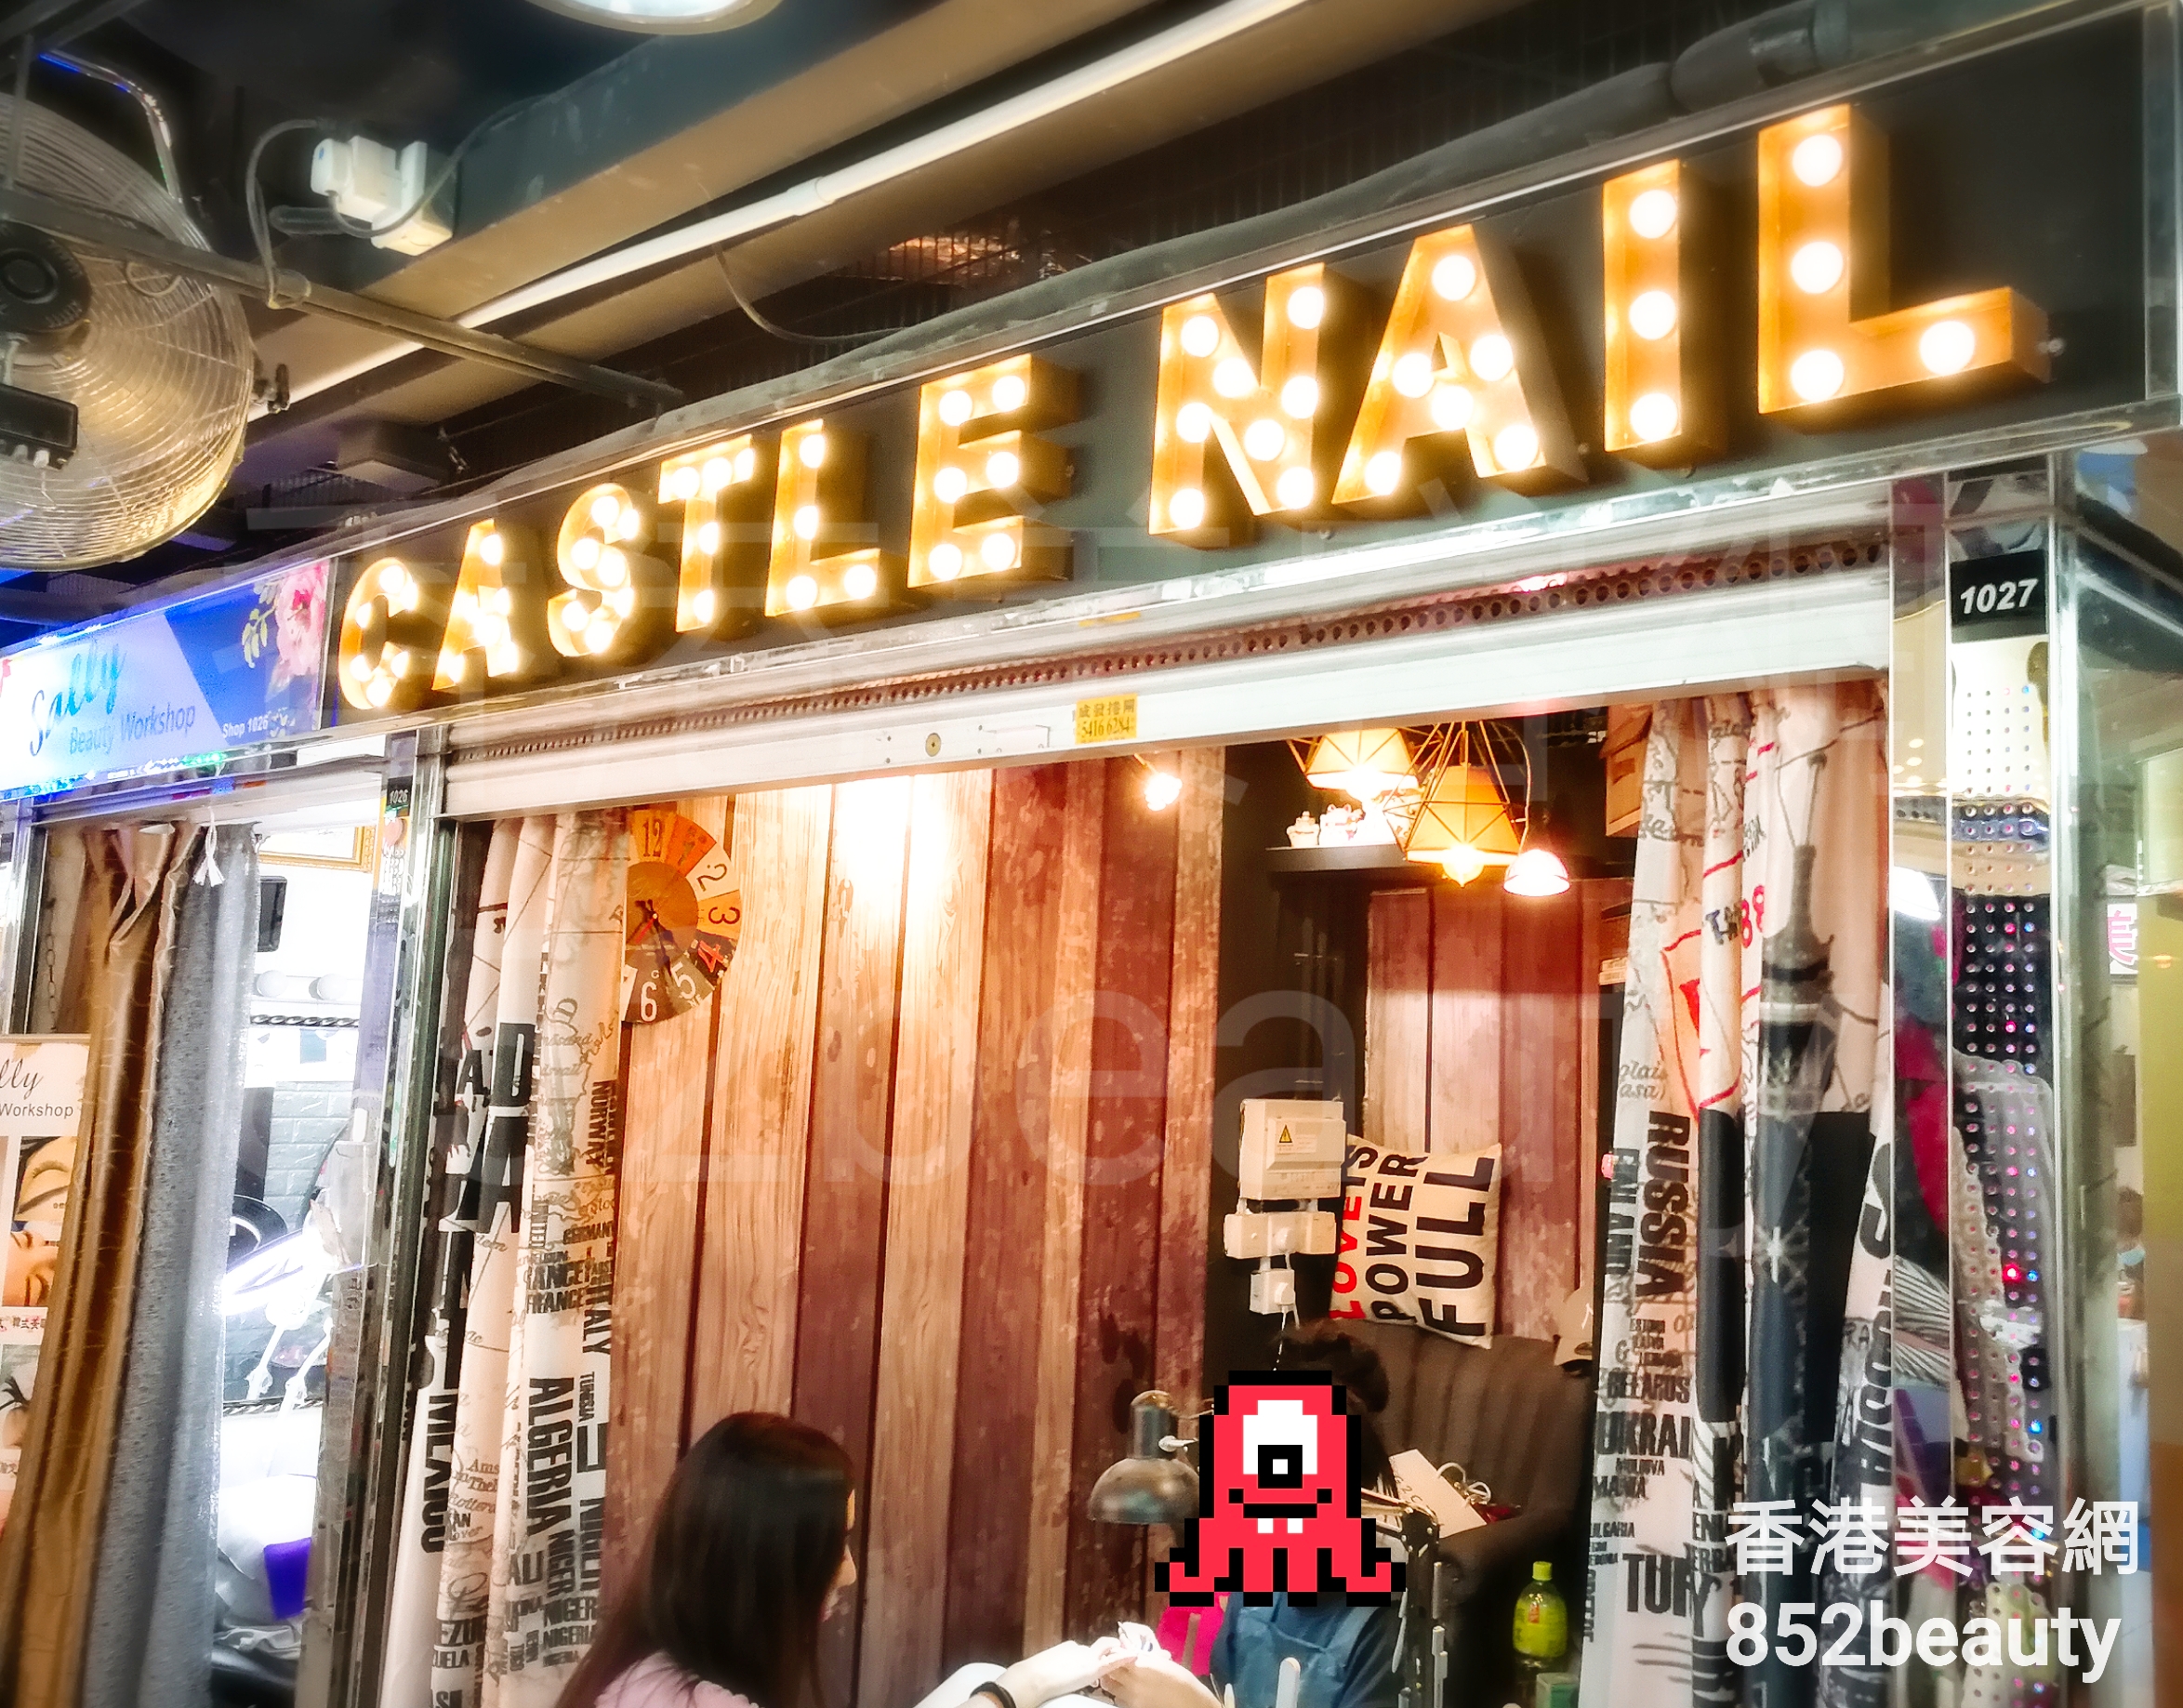 : Castle Nail